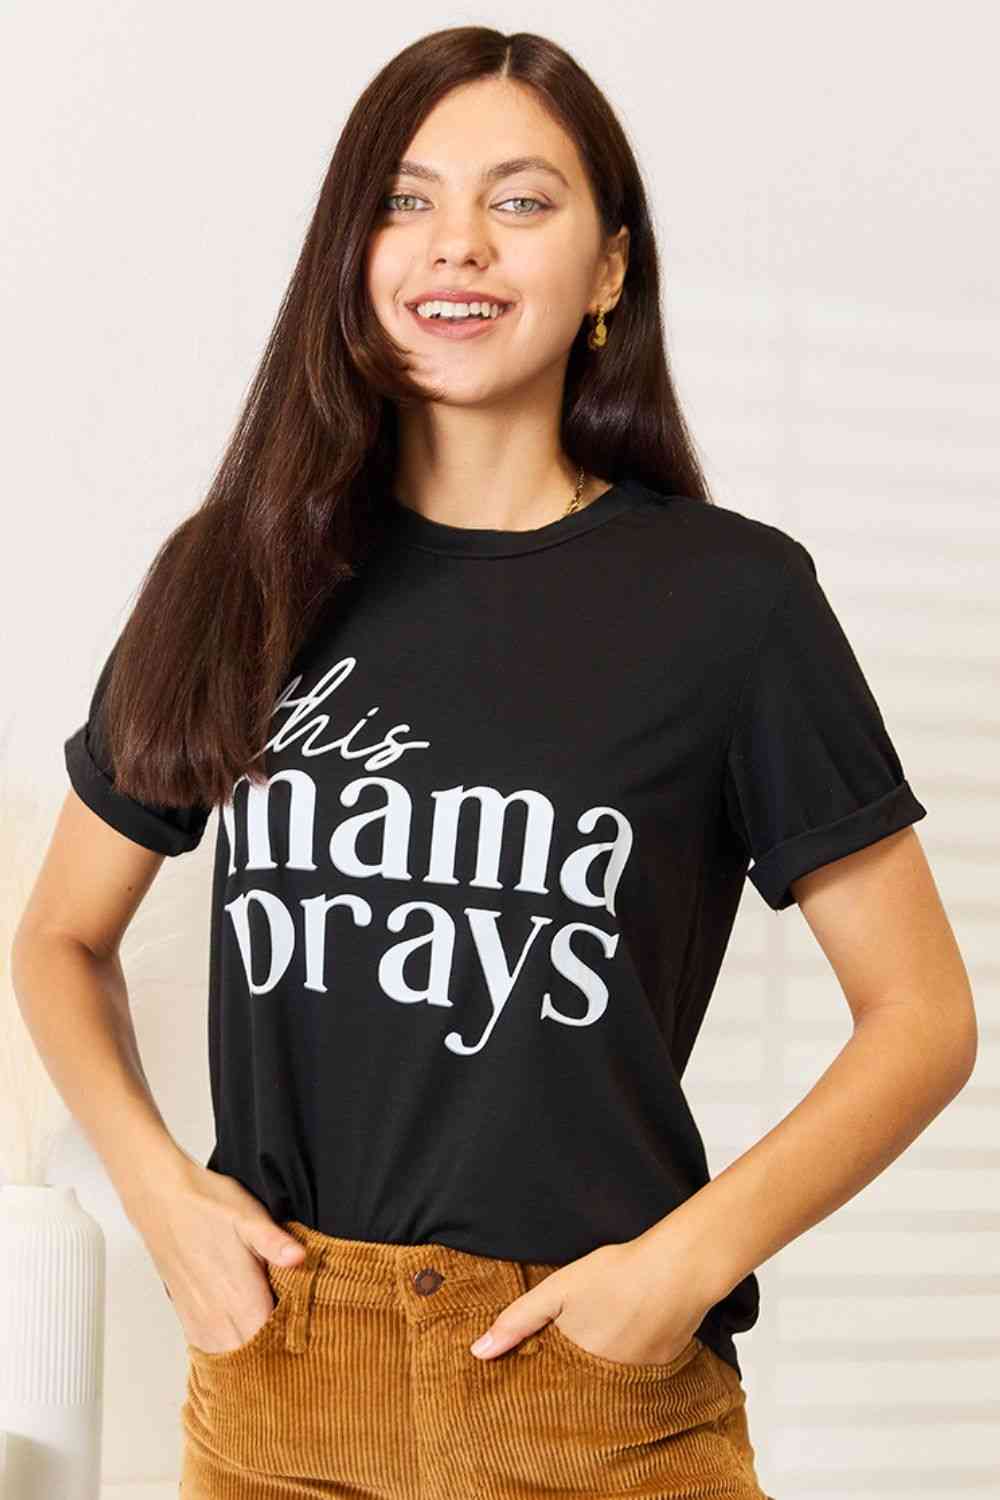 THIS MAMA PRAYS Graphic T-Shirt